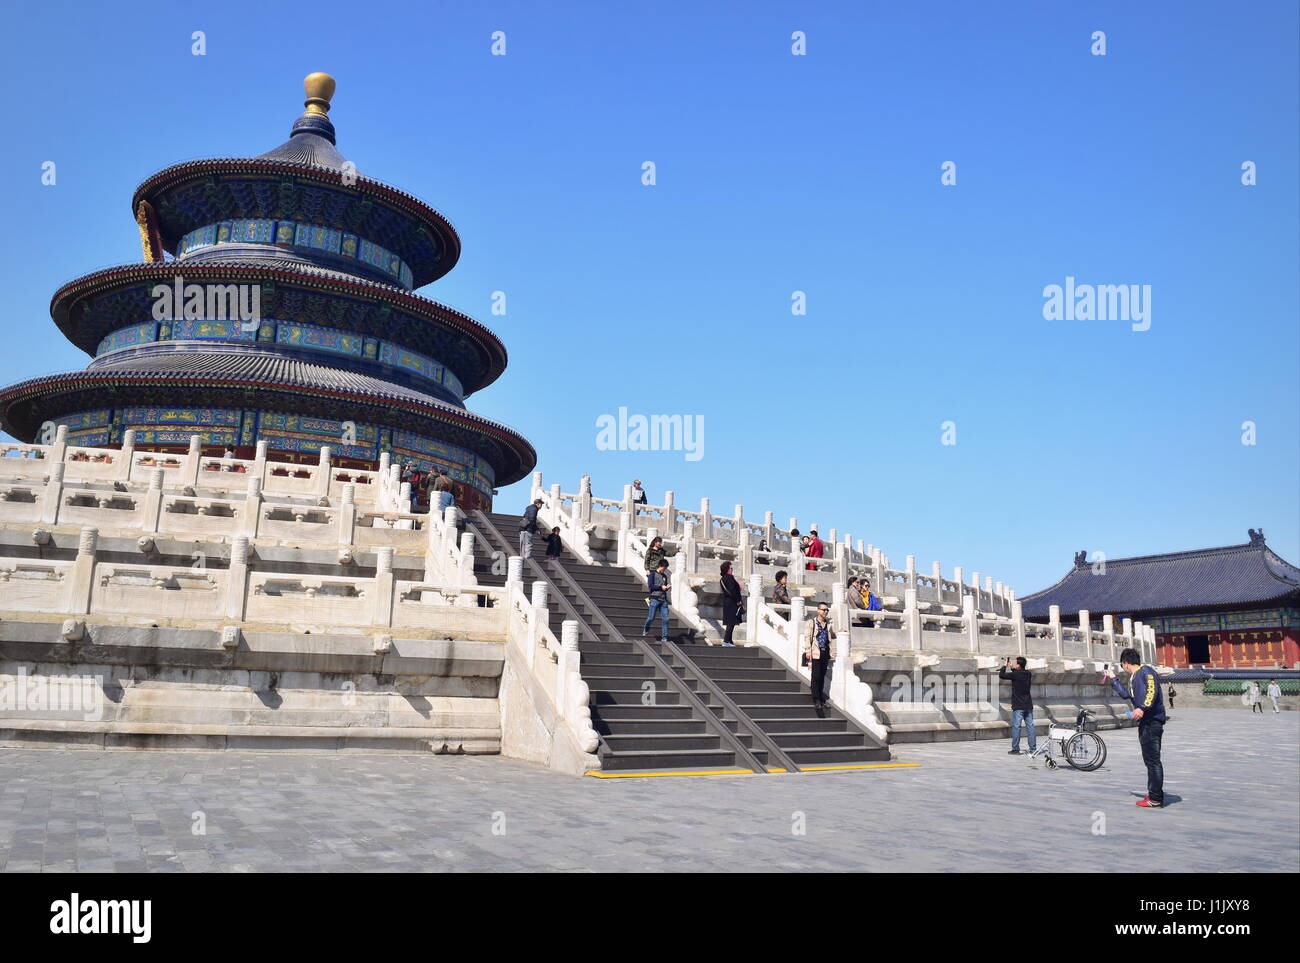 Historique de Beijing Temple du Ciel escalier et en base de pierre - Ciel bleu clair Banque D'Images